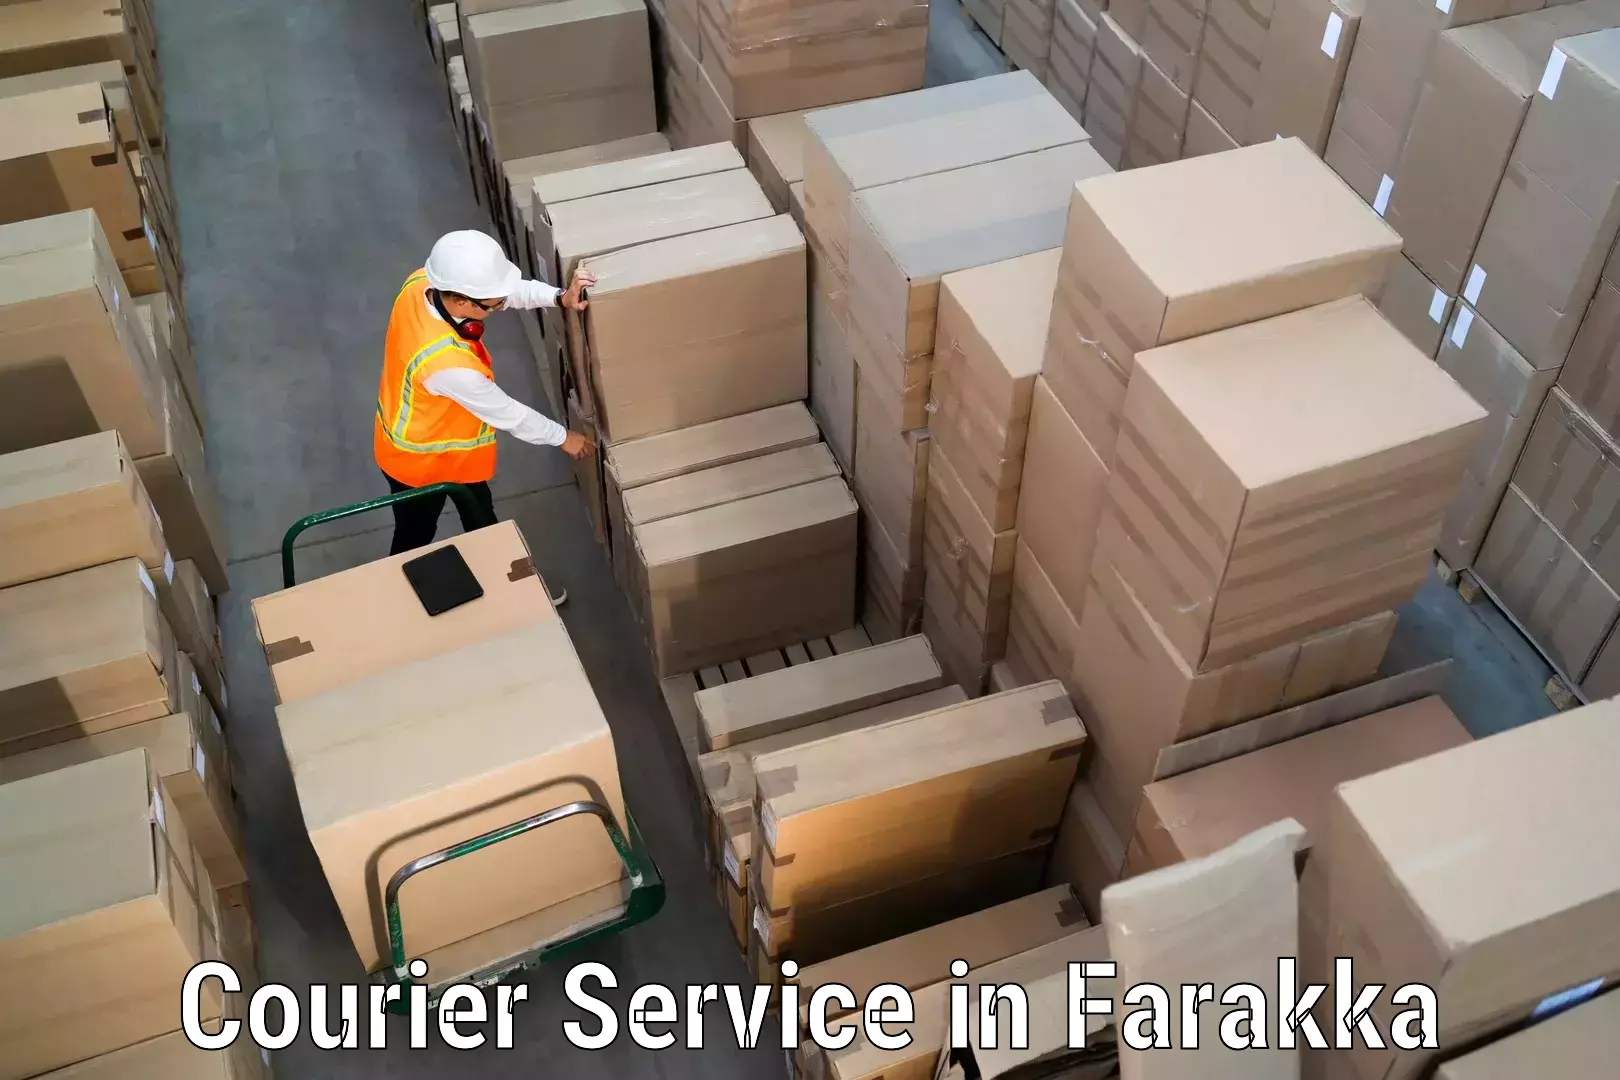 User-friendly delivery service in Farakka